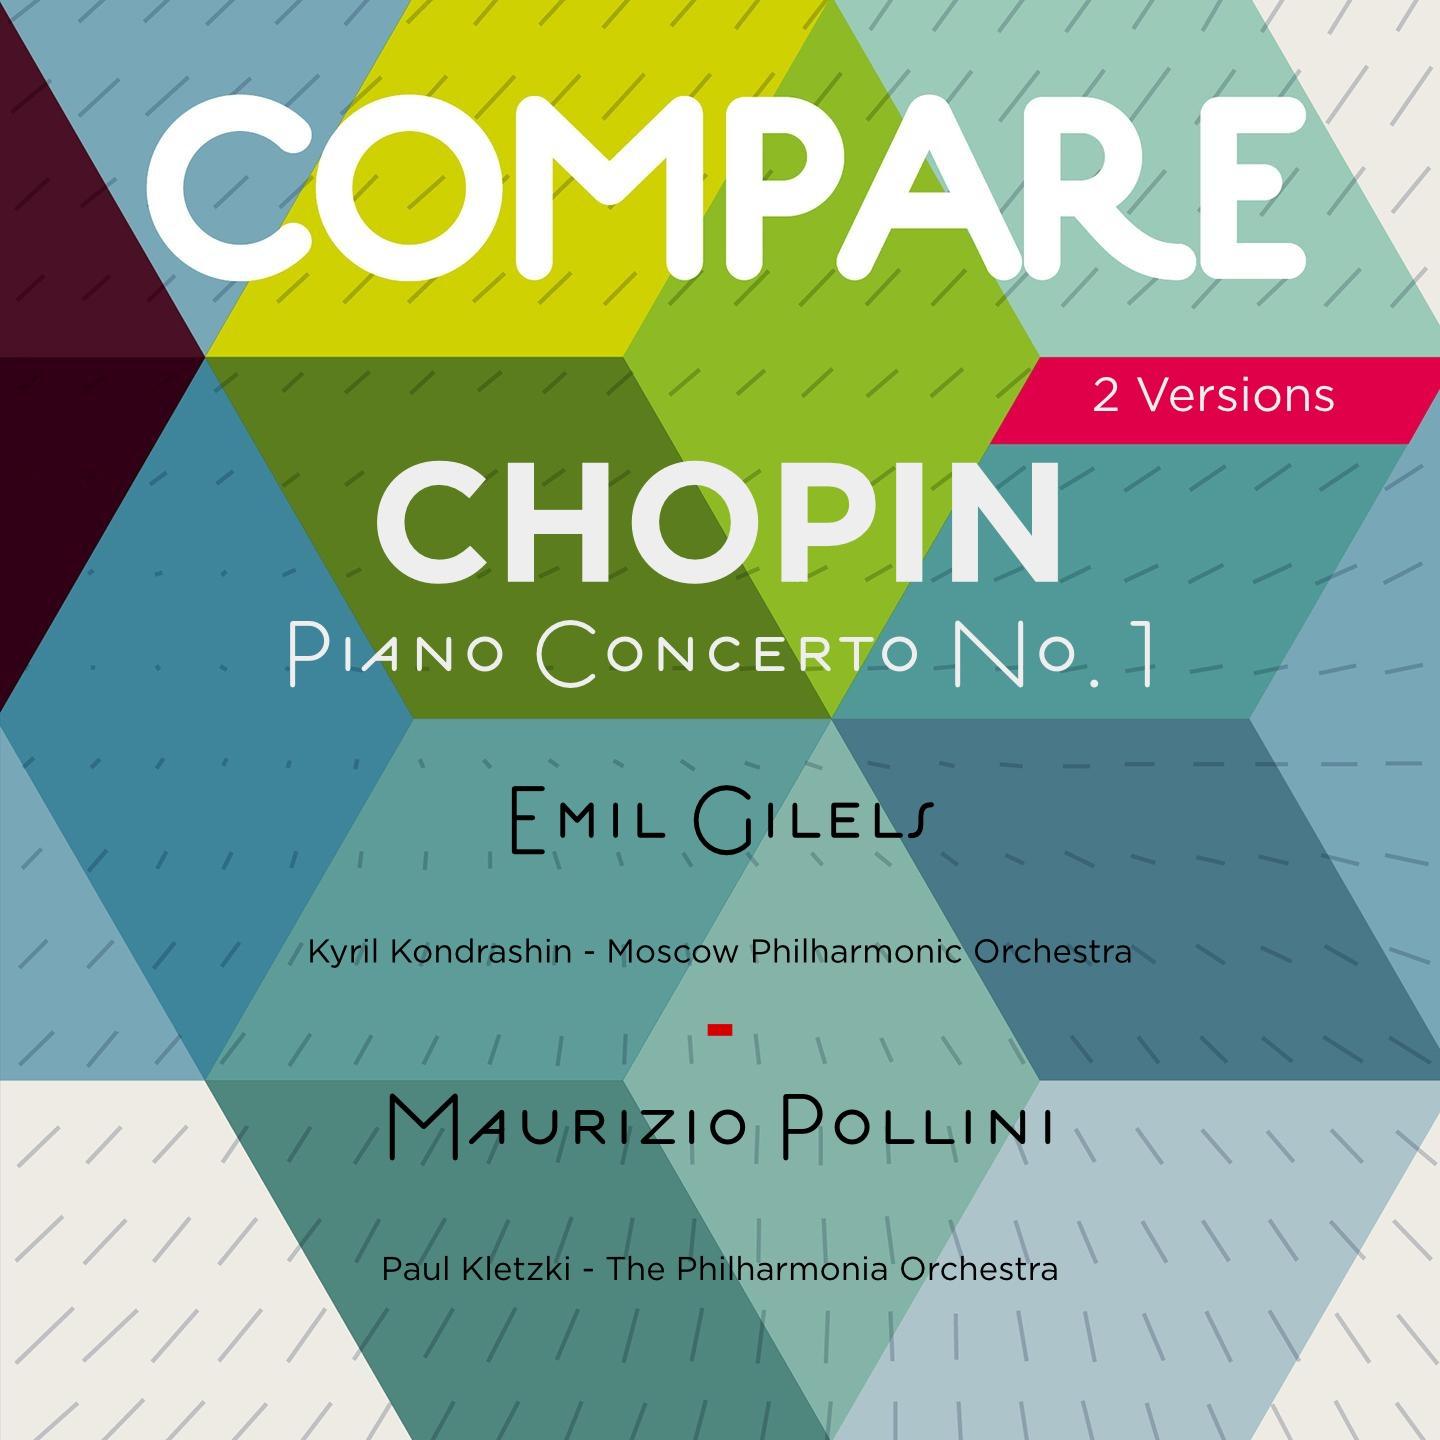 Chopin: Piano Concerto No. 1, Emil Gilels vs Maurizio Pollini